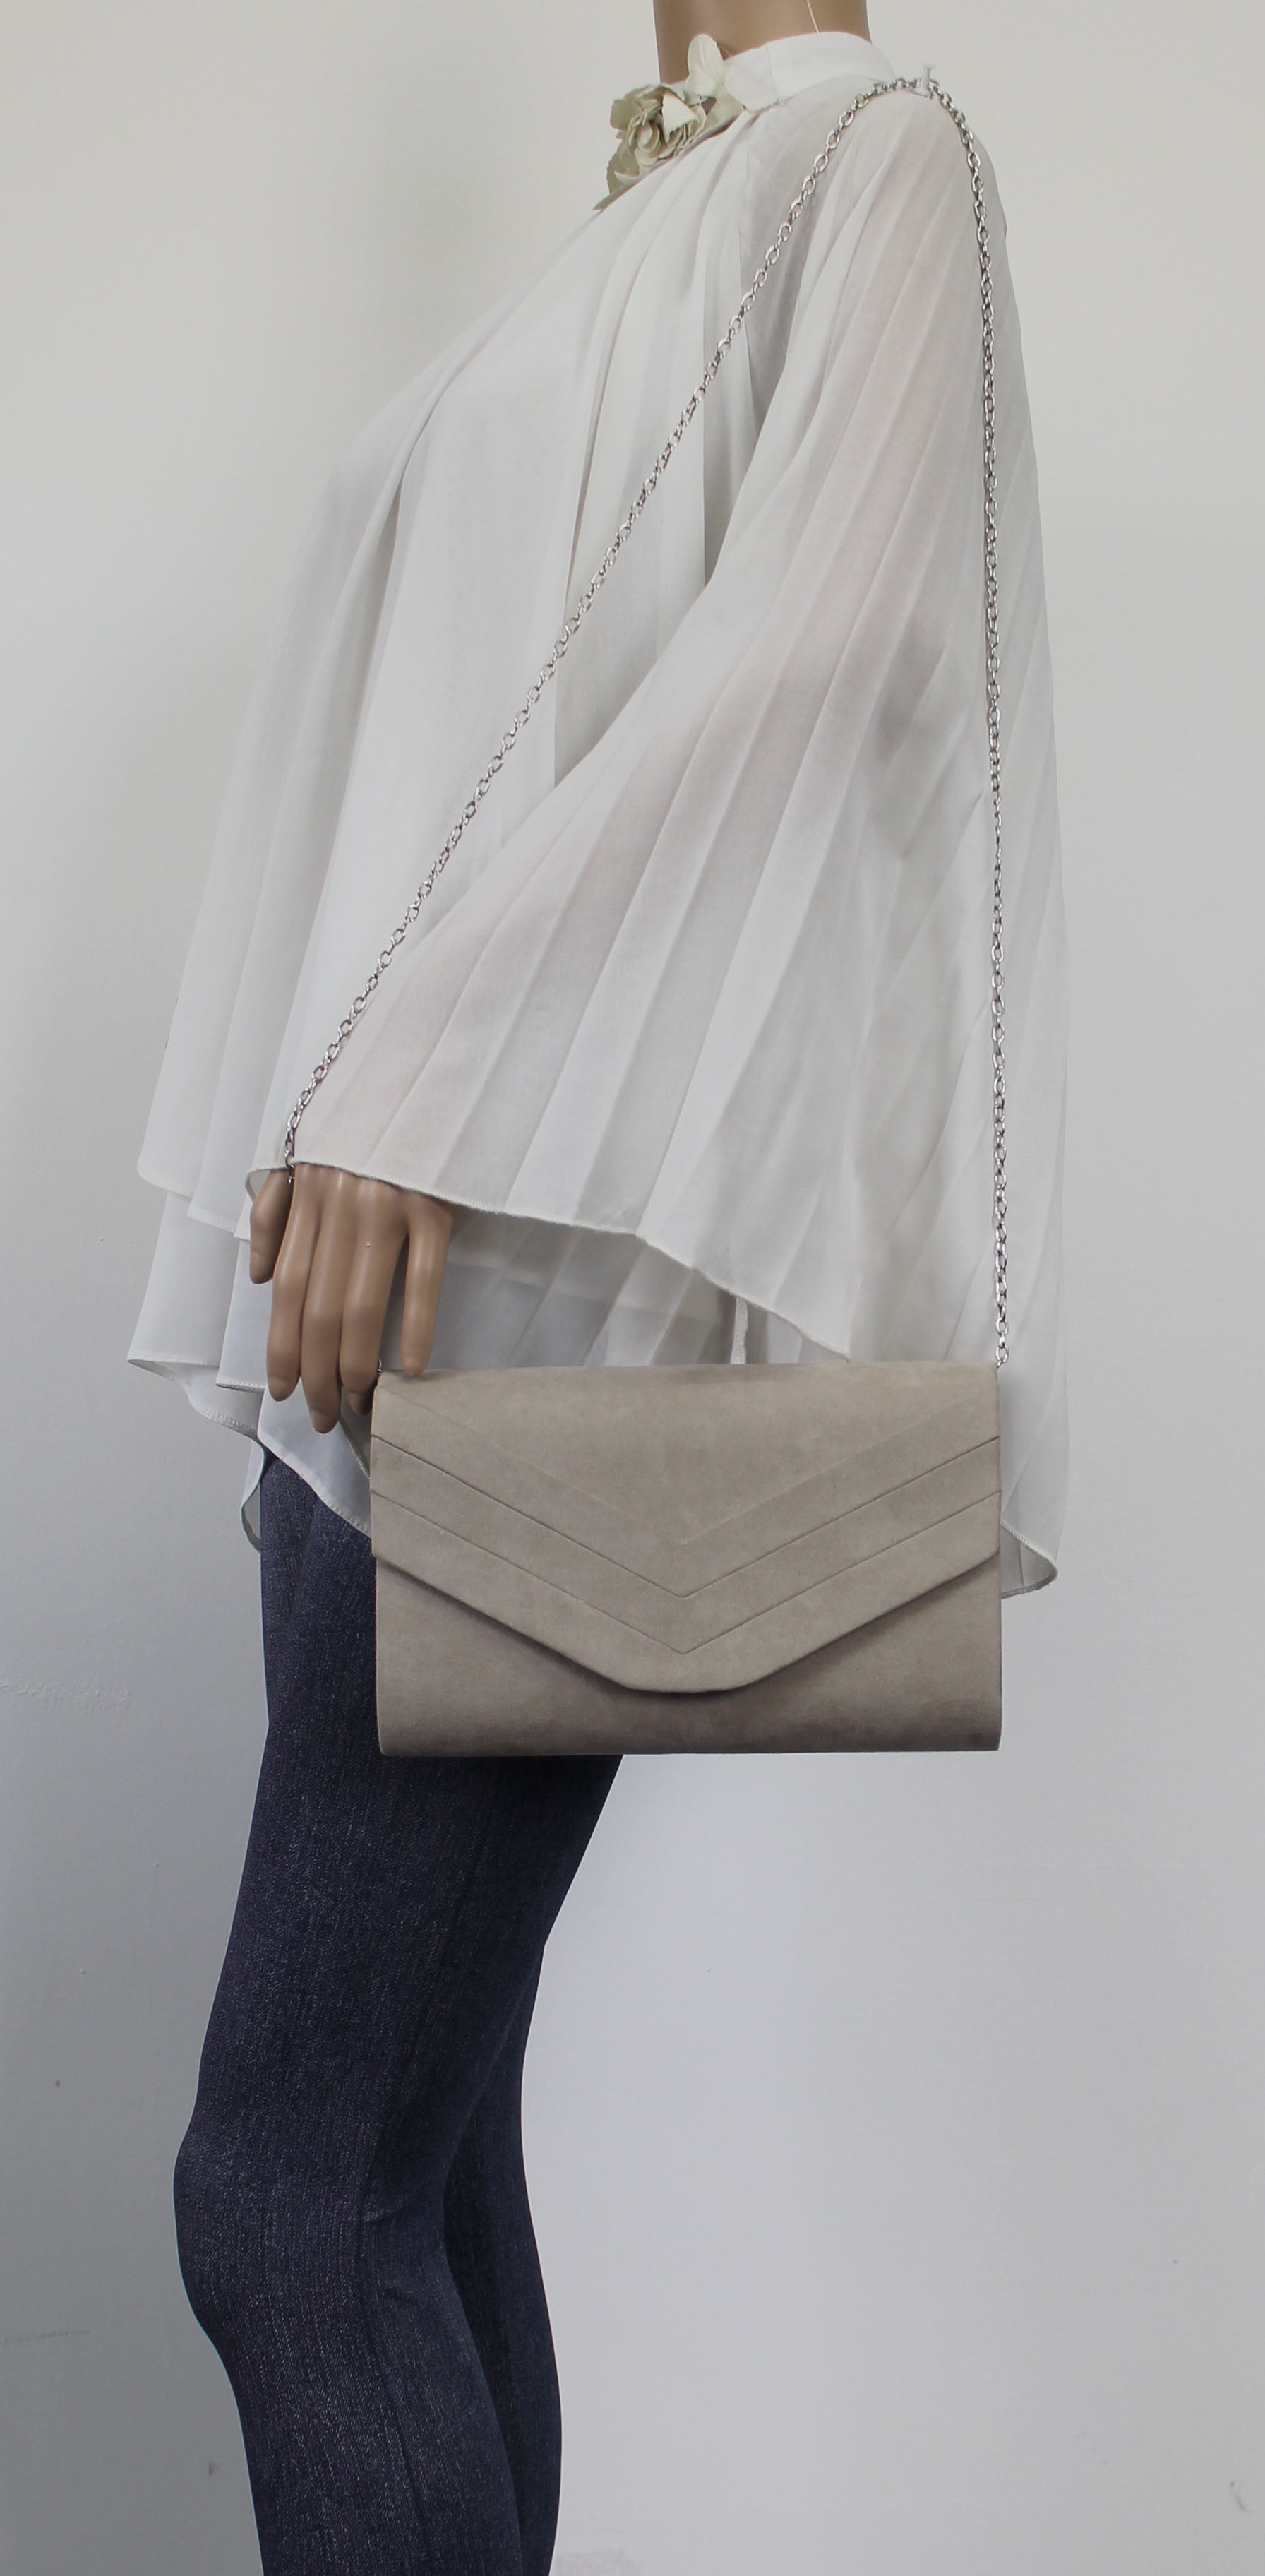 SWANKYSWANS Samantha V Detail Clutch Bag Copley Grey Cute Cheap Clutch Bag For Weddings School and Work